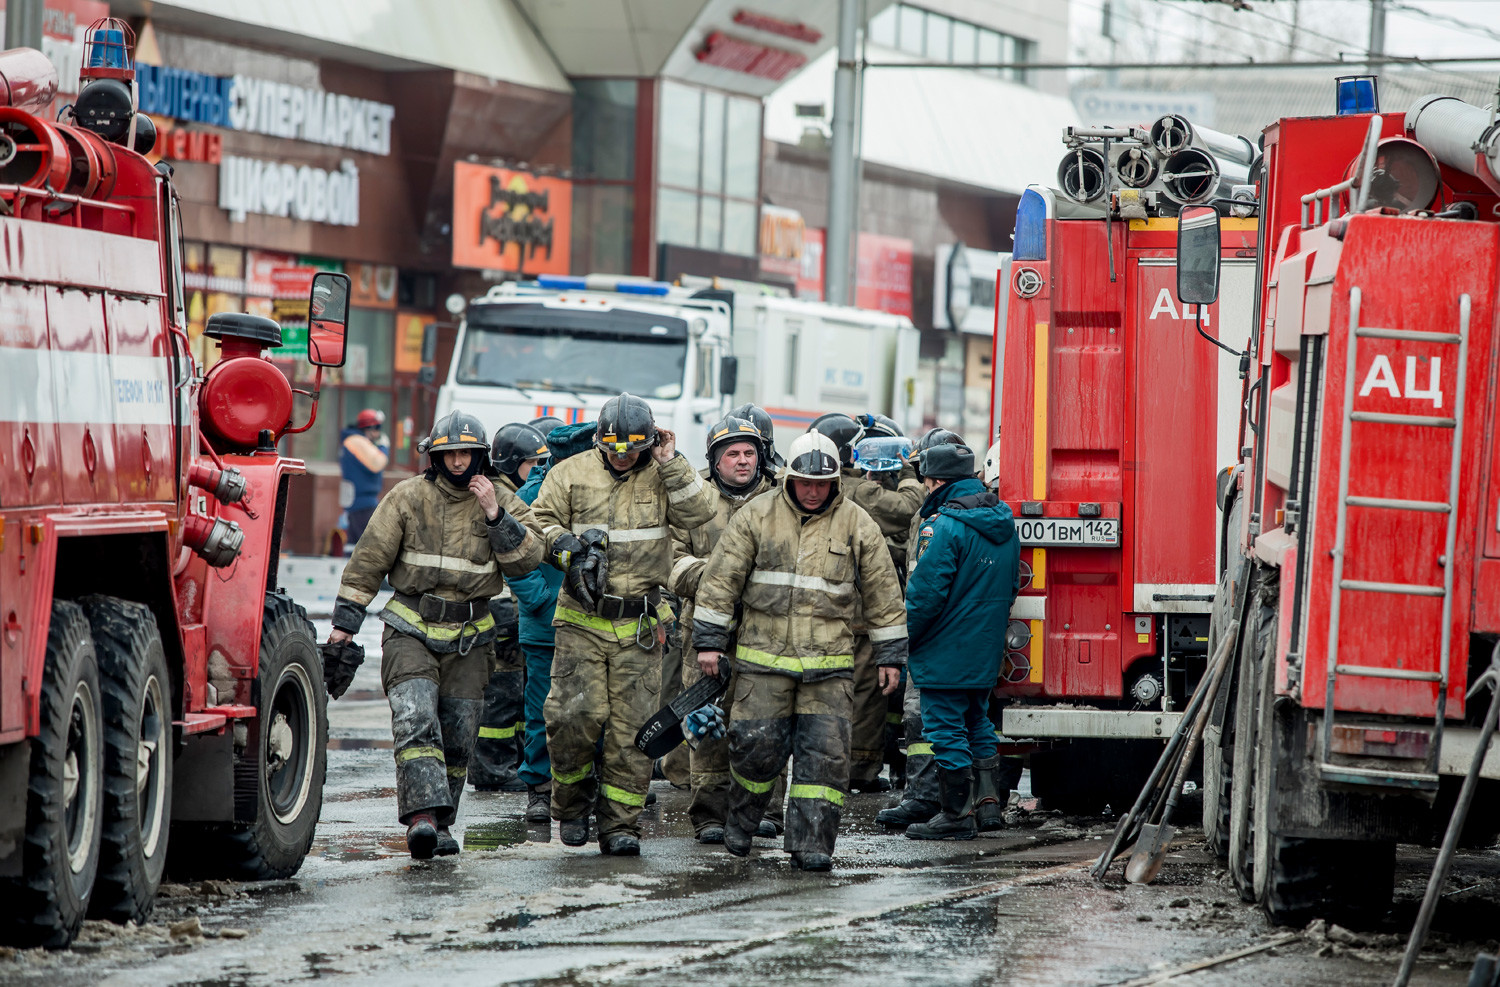 Grupo de bomberos cerca del centro comercial “Zímniaia Víshnia” en Kémerovo, el 26 de marzo de 2018.